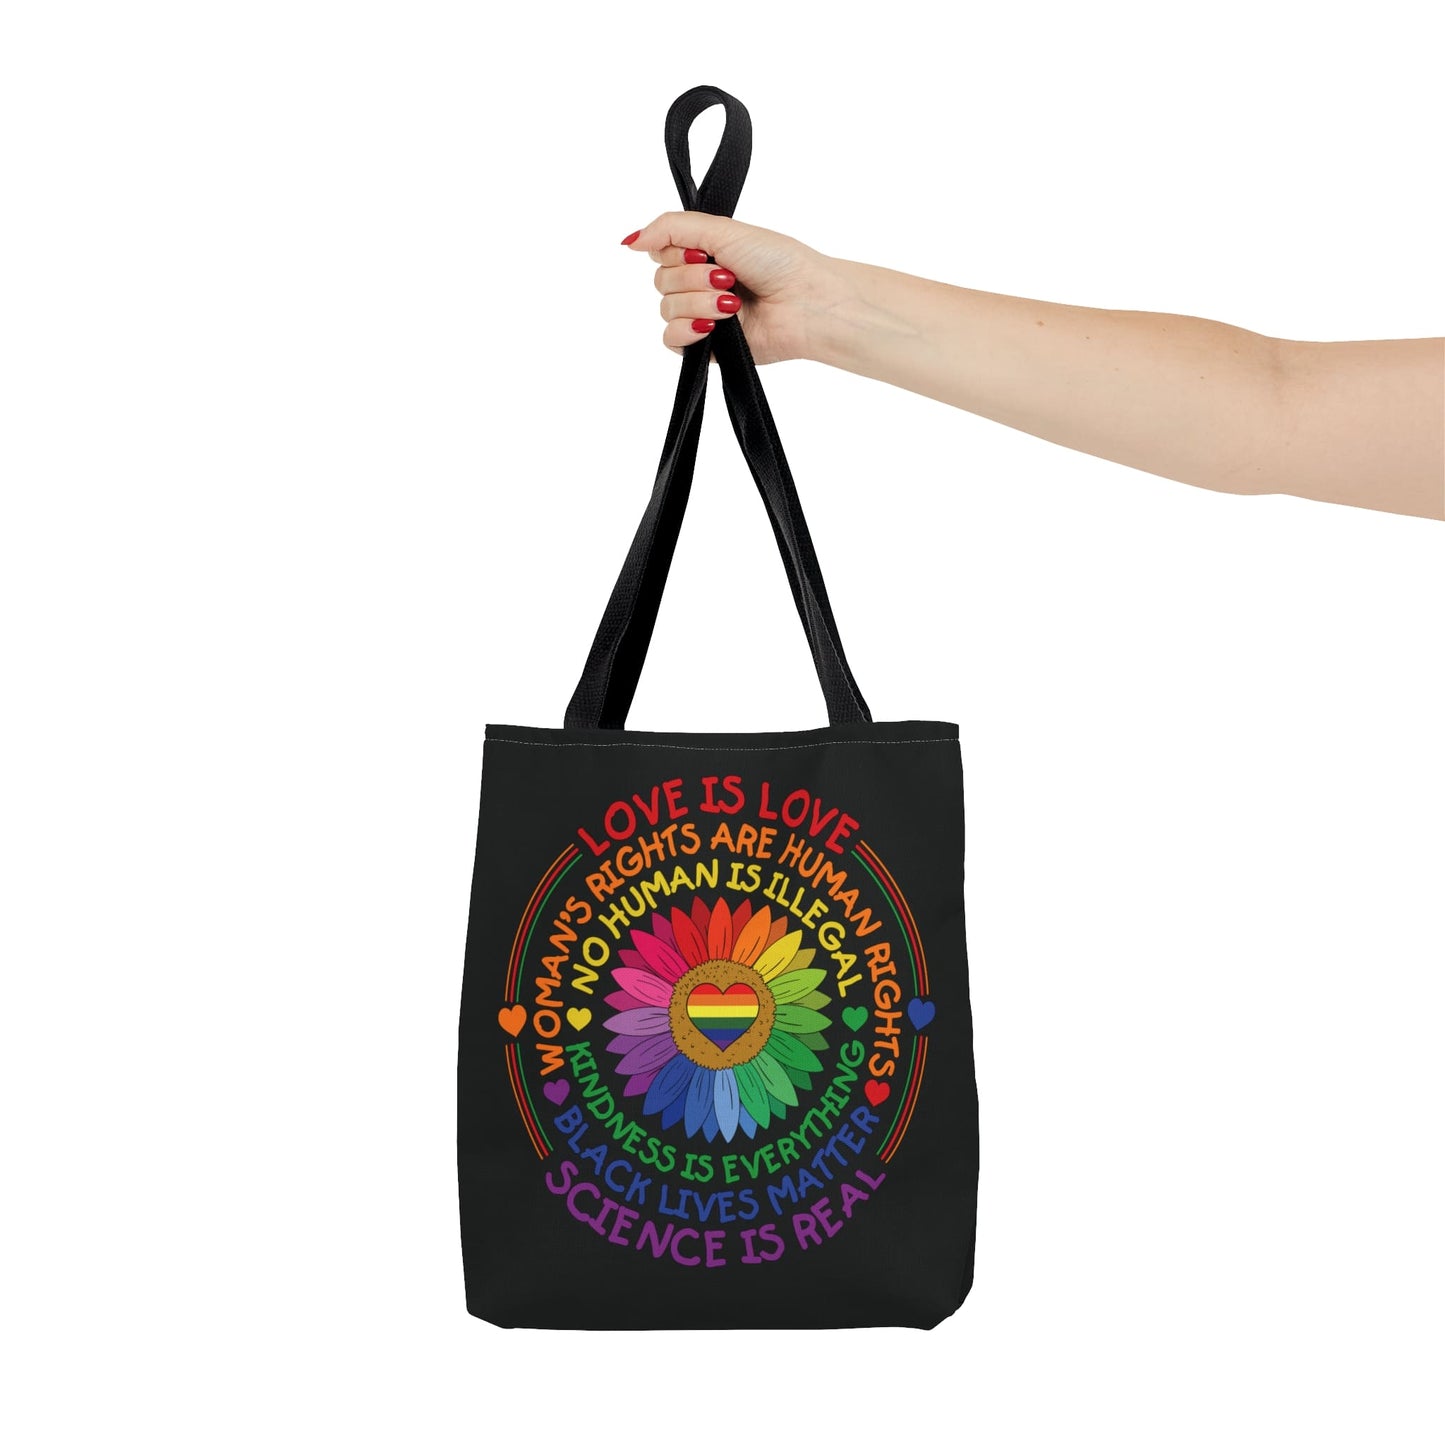 LGBTQ pride tote bag, human rights bag, small